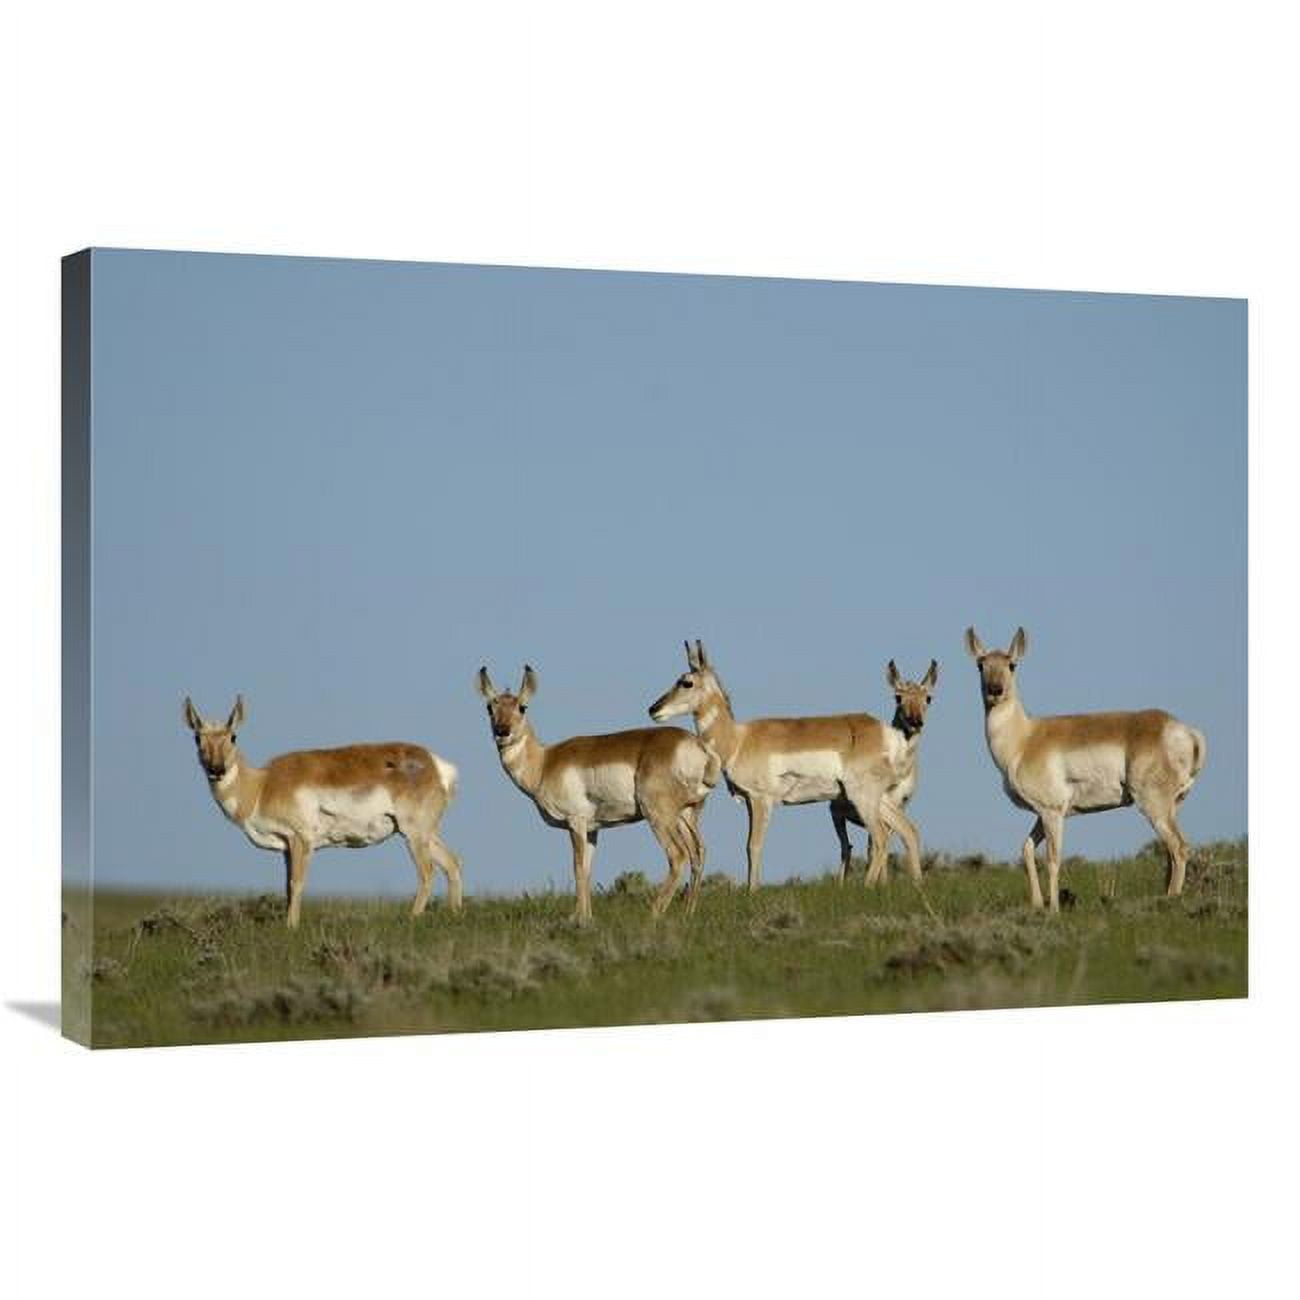 Global Gallery GCS-453086-2436-142 24 x 36 in. Pronghorn Antelope Herd, Wyoming Art Print - Pete Oxford